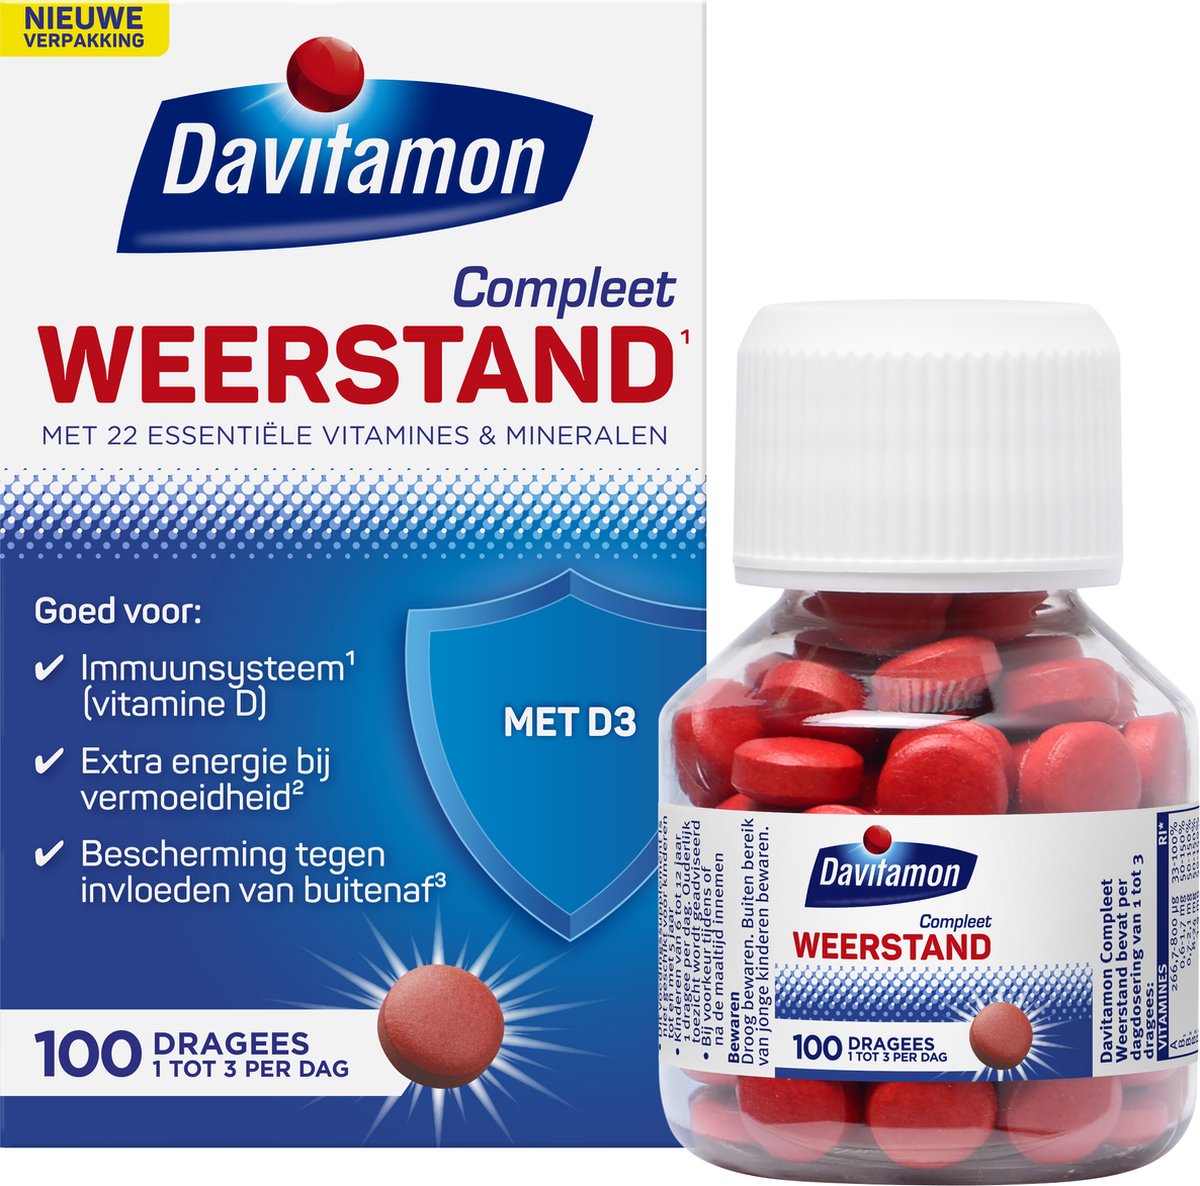 Davitamon Compleet Weerstand - Multivitamine en mineralen - 100 dagrees - Davitamon